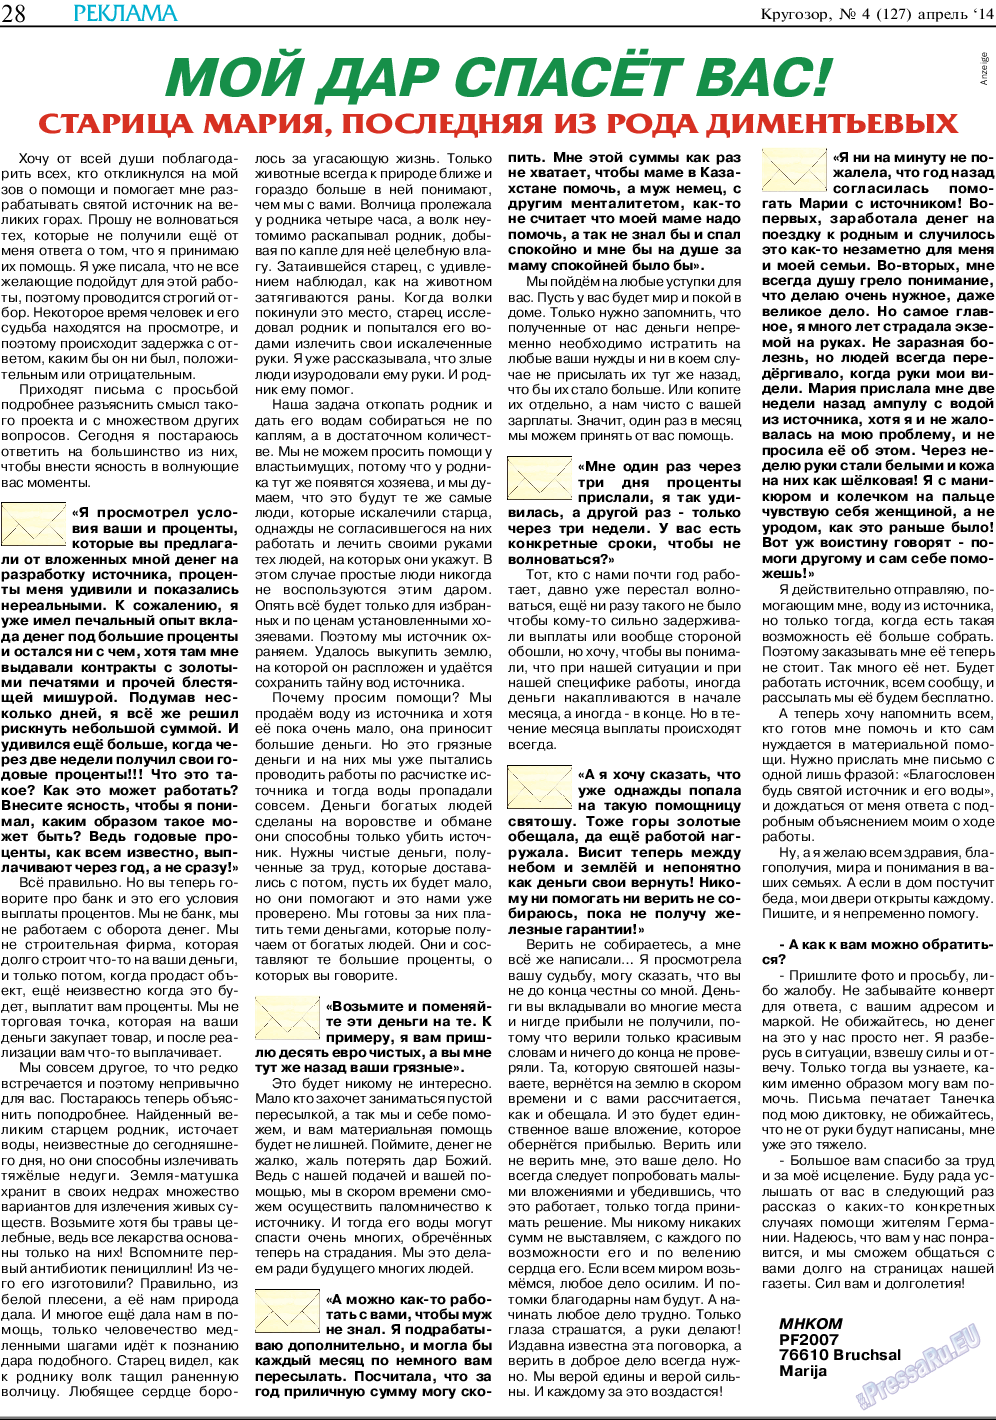 Кругозор (газета). 2014 год, номер 4, стр. 28